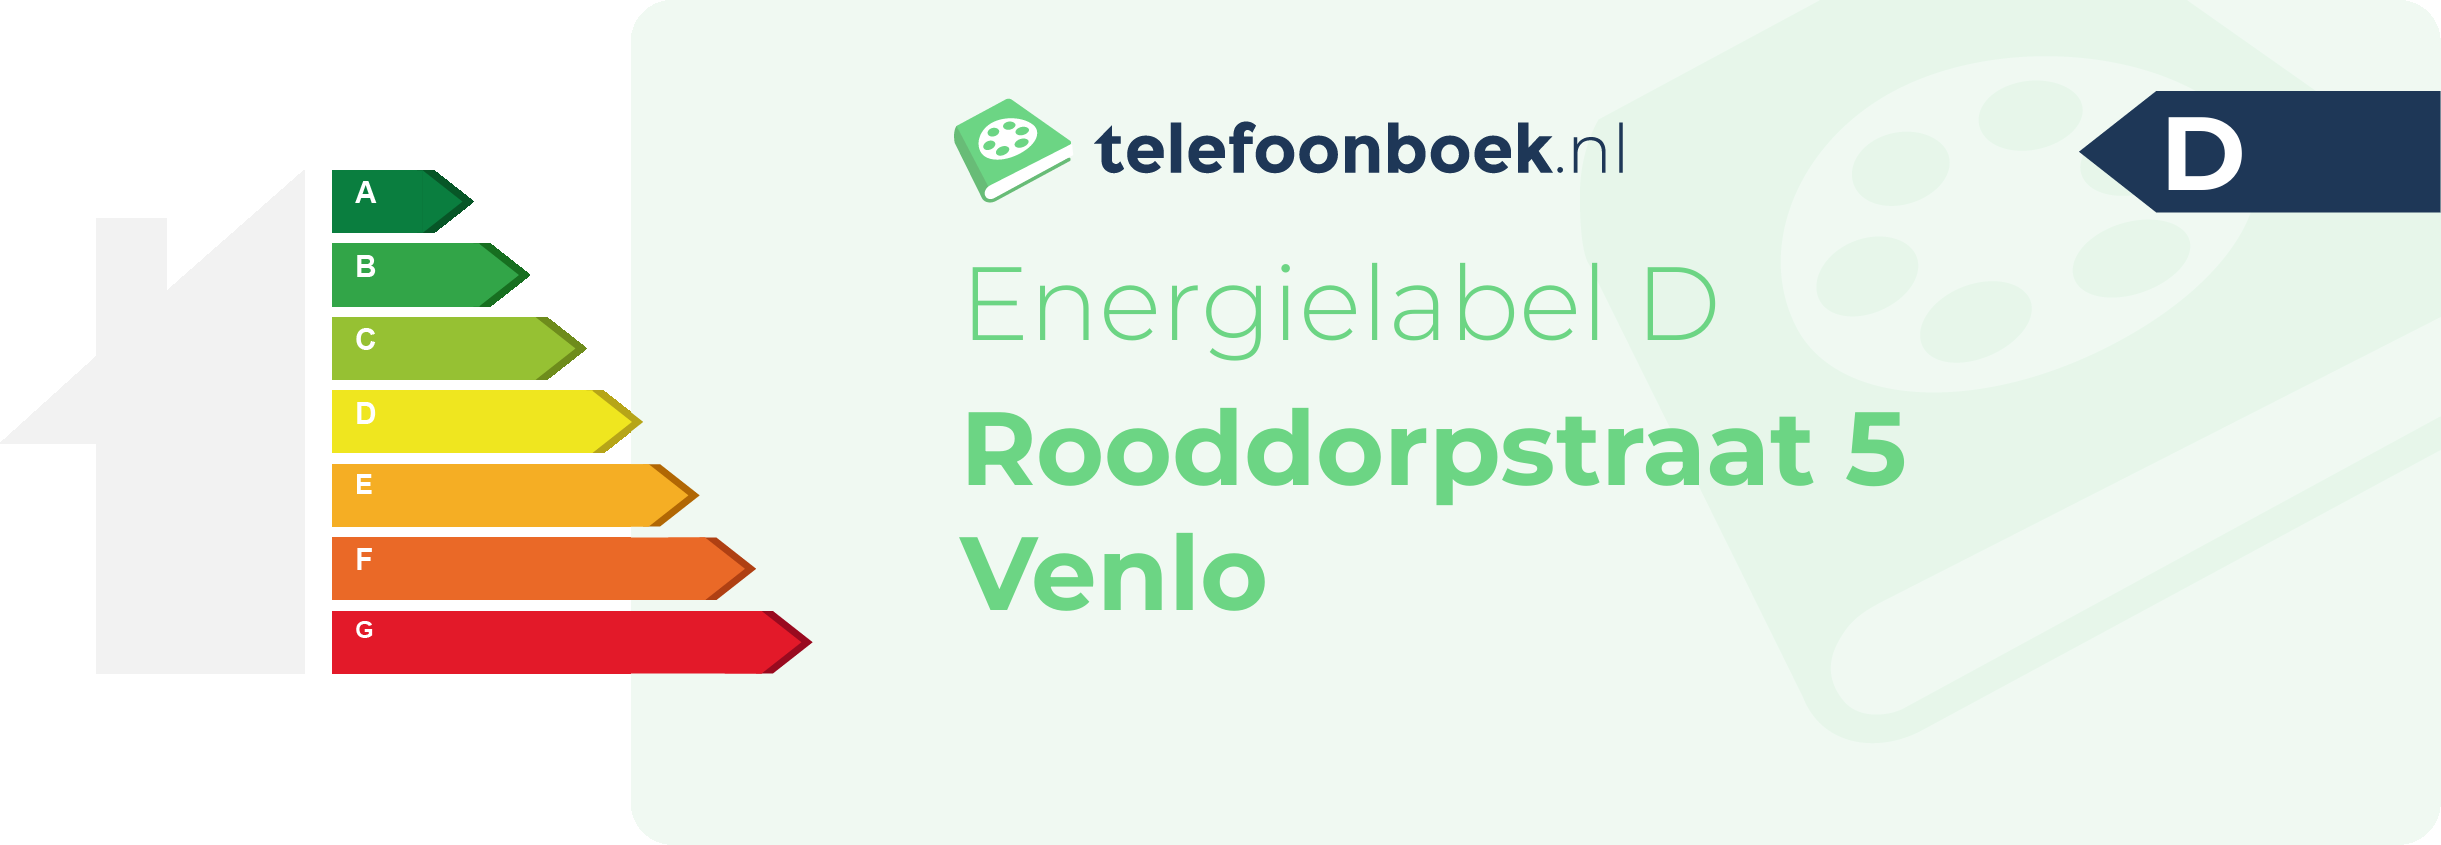 Energielabel Rooddorpstraat 5 Venlo